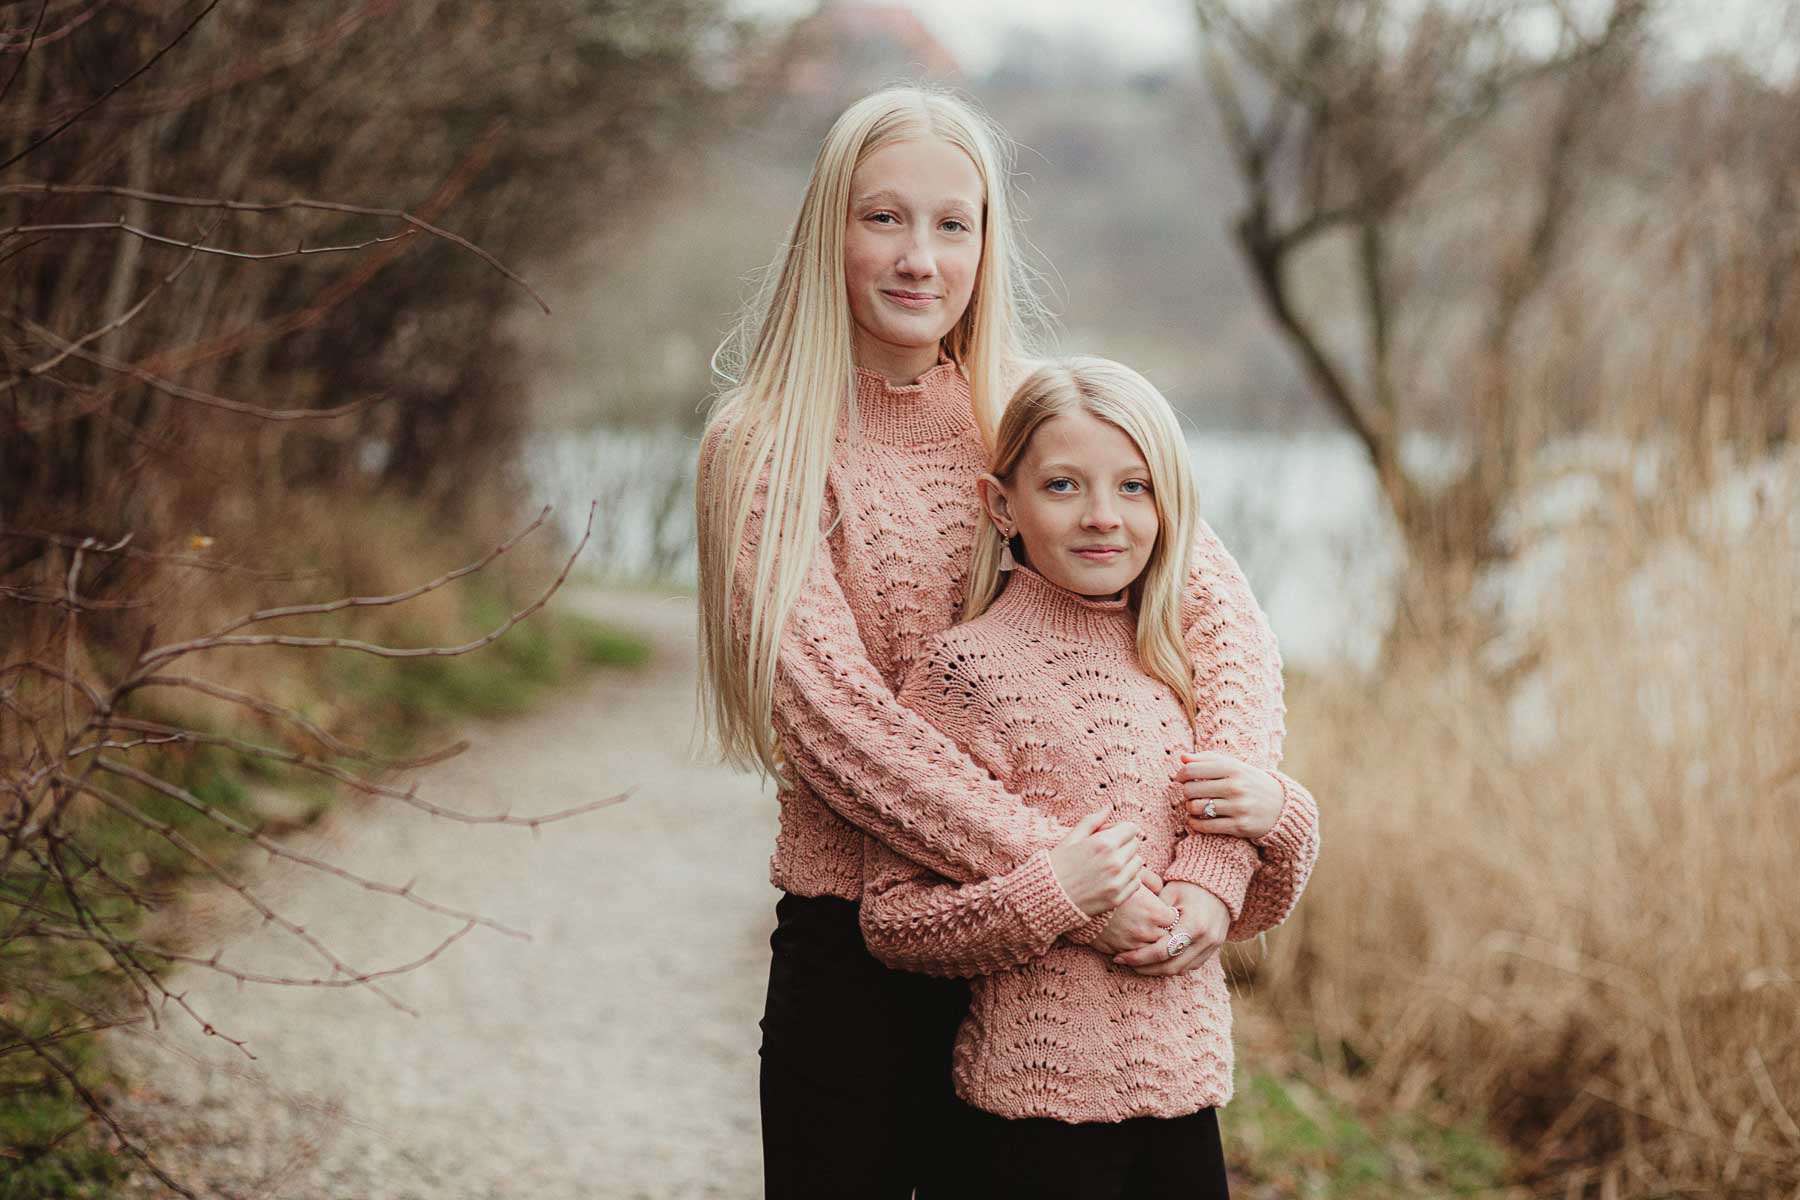 Få fagligt kompetent familiefotografering i Danmark: Vores resultater taler for sig selv